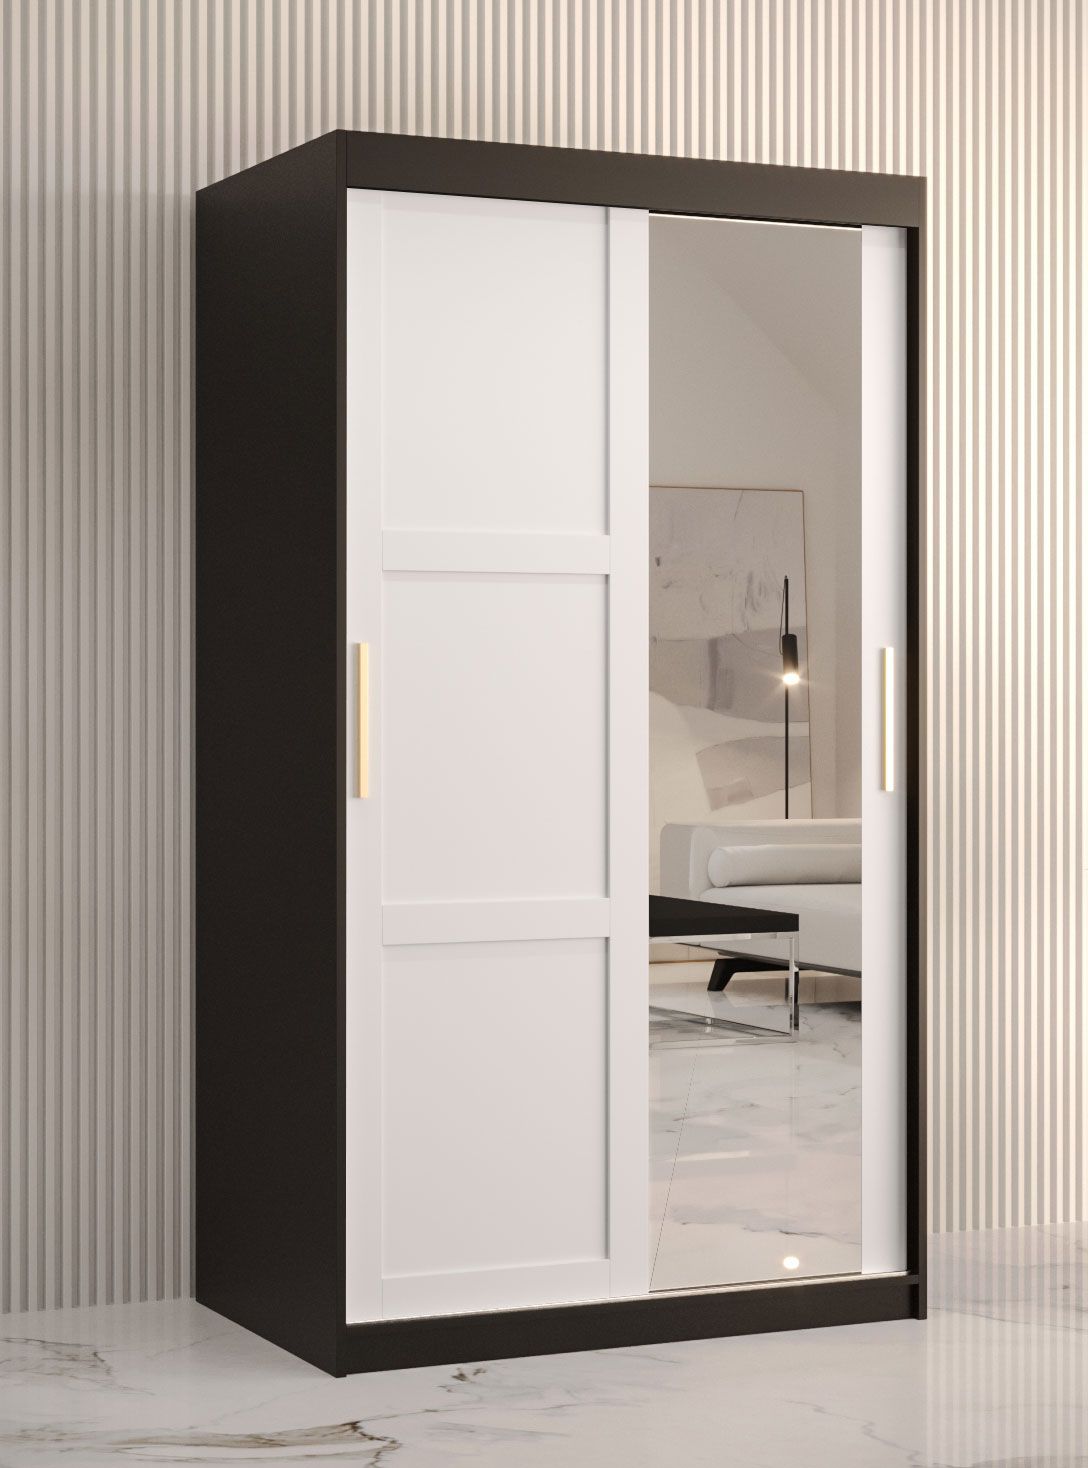 Armoire avec une porte miroir Liskamm 27, Couleur : Noir mat / Blanc mat - Dimensions : 200 x 100 x 62 cm (h x l x p), avec deux portes